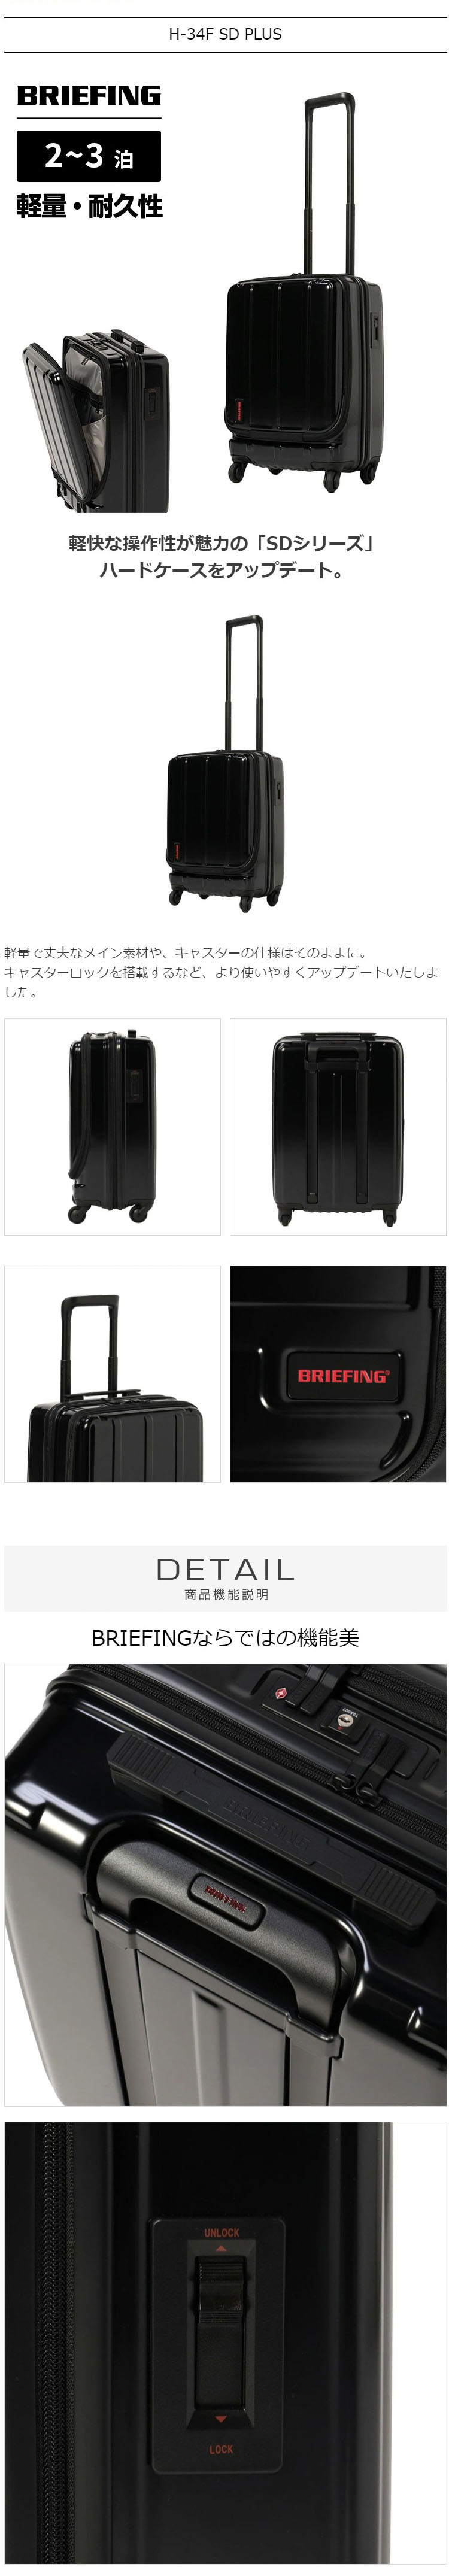 ブリーフィング BRIEFING , スーツケース Sサイズ, H-34F SD PLUS, ハードケース（ファスナー）